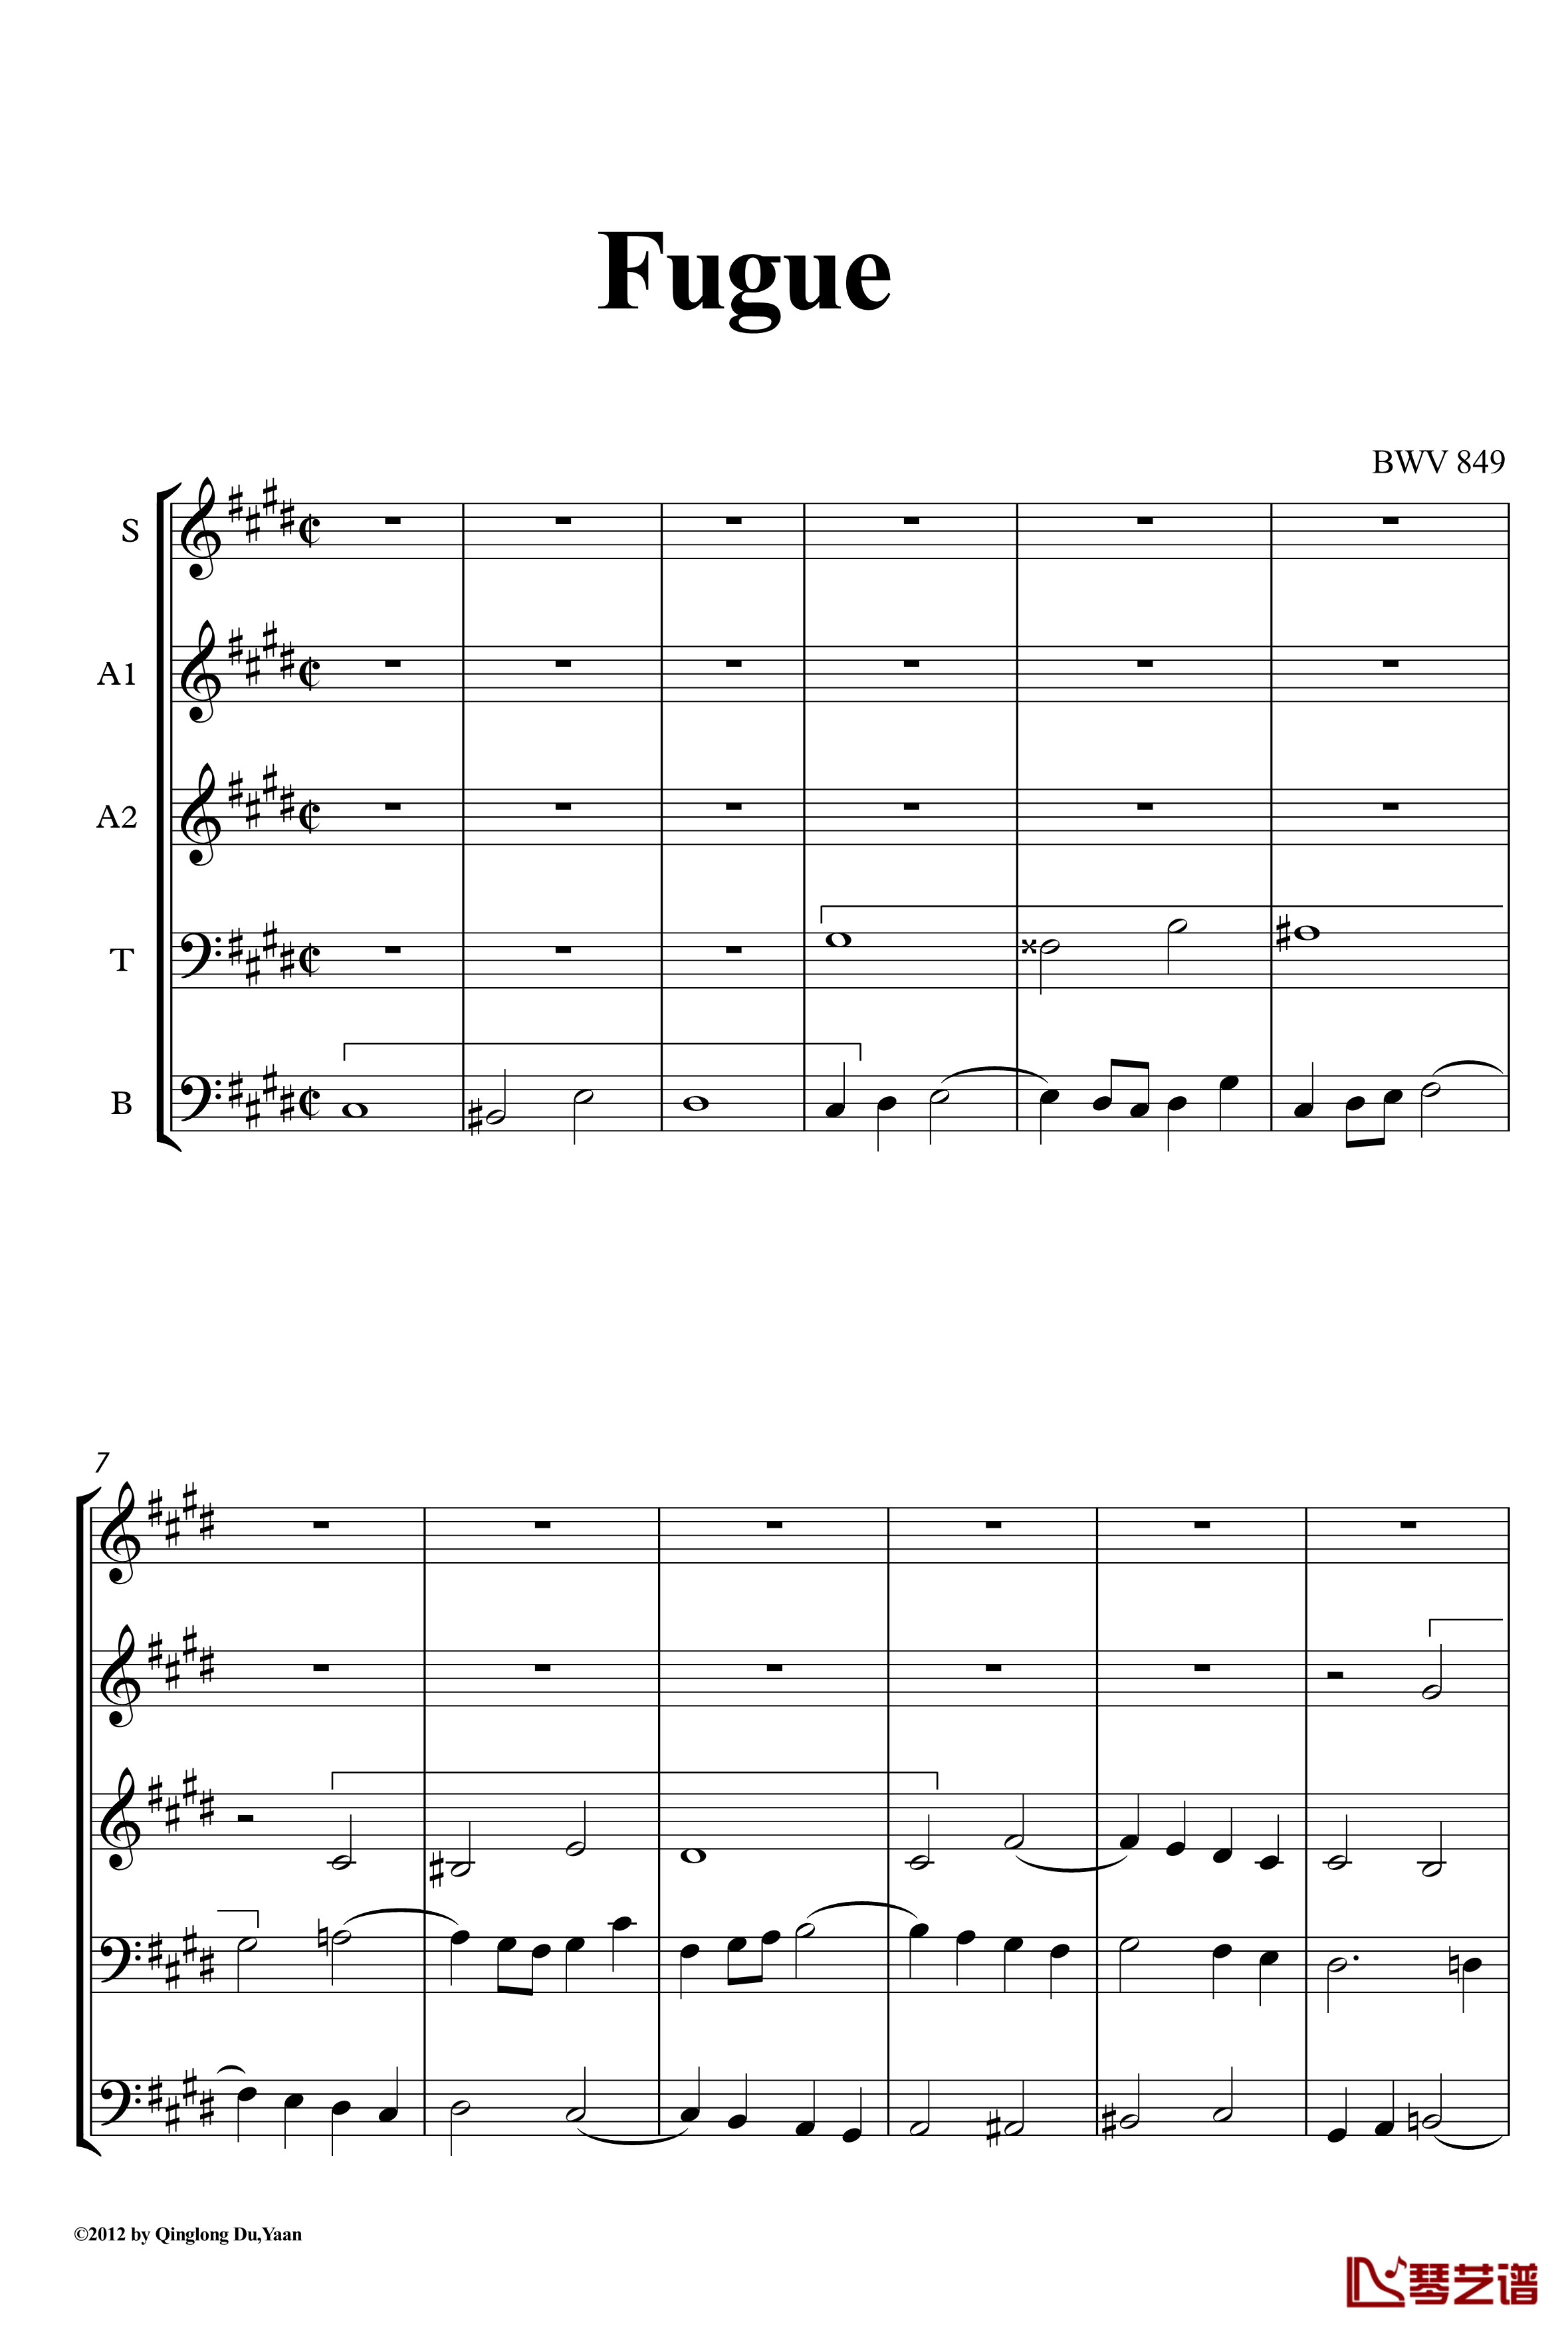 c小调赋格声部分析谱钢琴谱-选自巴赫平均律第一册-巴赫